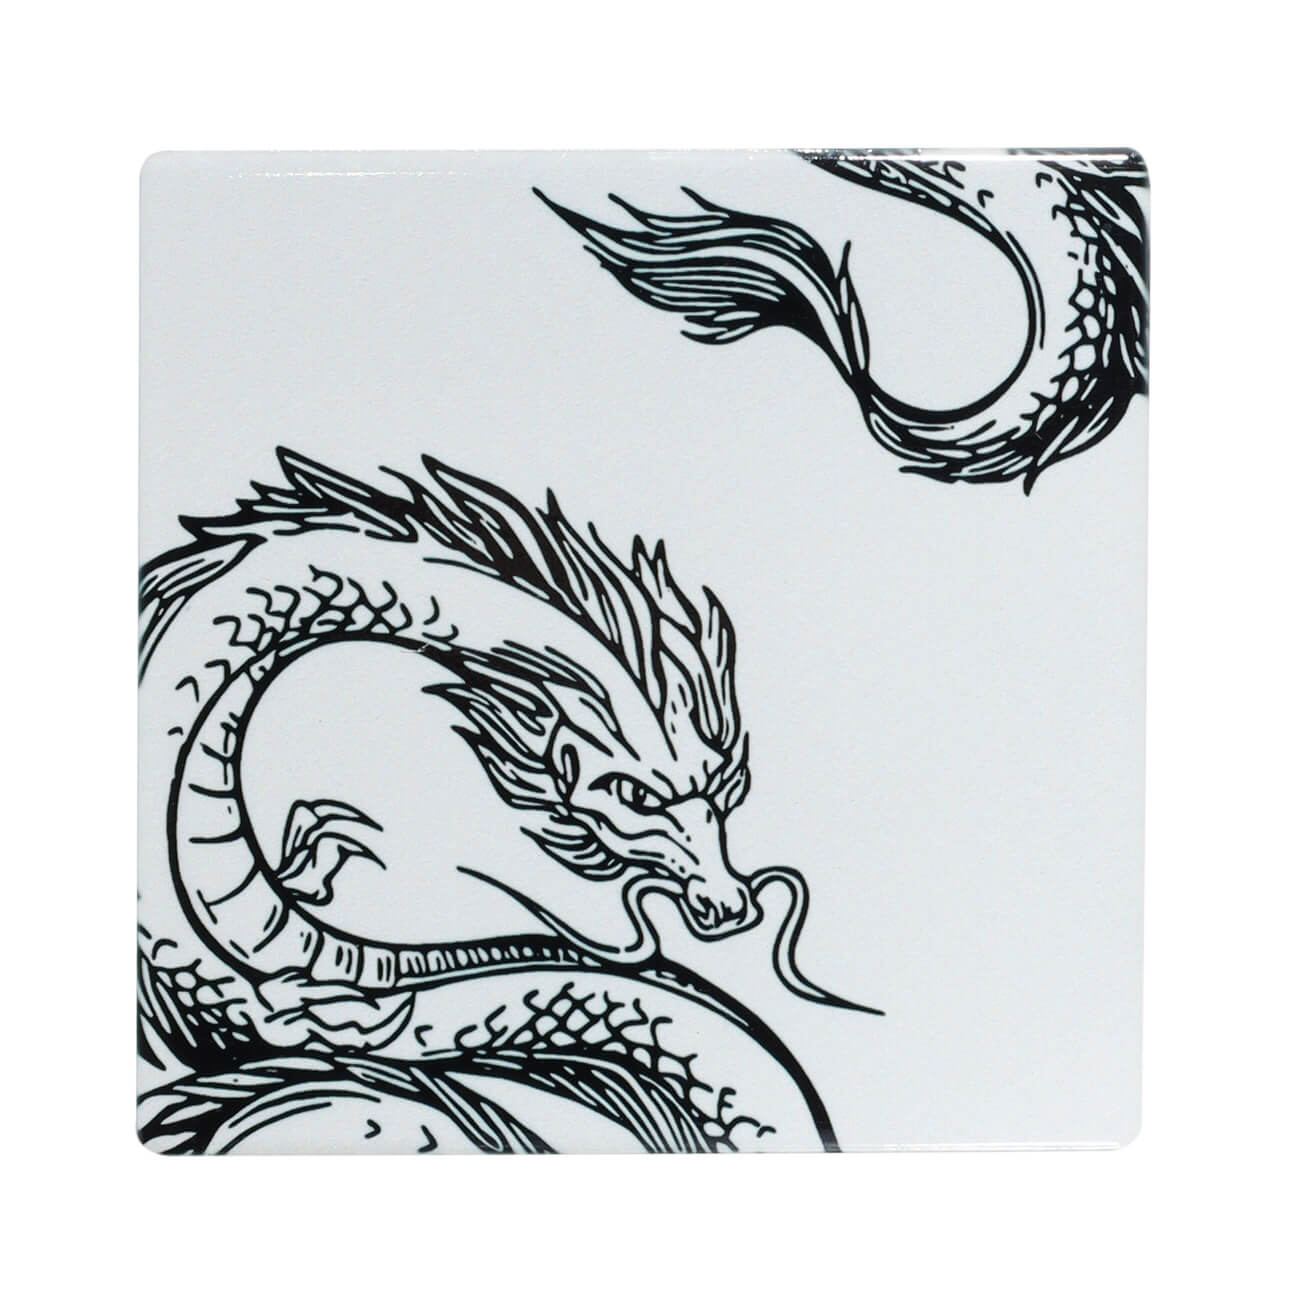 Подставка под кружку, 11х11 см, керамика/пробка, квадратная, молочная, Дракон, Dragon dayron подставка под кружку 11 см керамика пробка круглая черная дракон dragon dayron